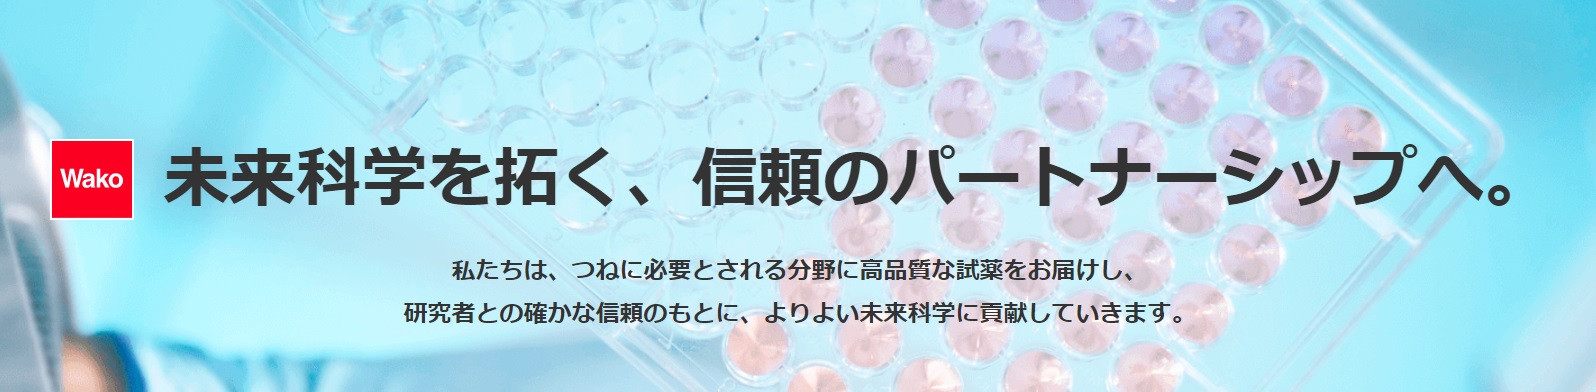 富士フイルム和光純薬　日本初「アミノ酸混合標準物質生産者」の認定を取得